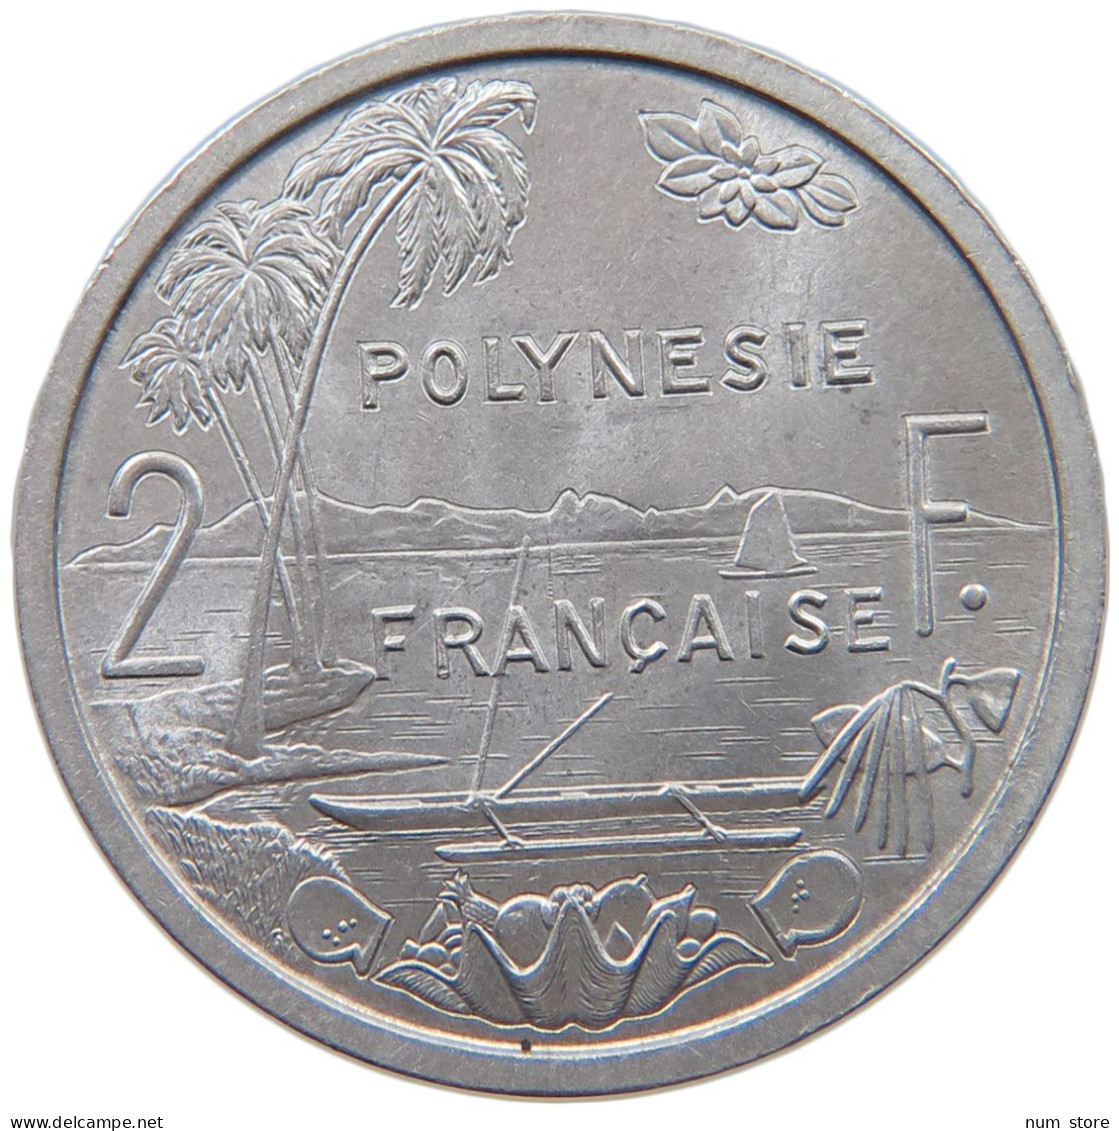 POLYNESIA 2 FRANCS 1965  #c019 0457 - Polynésie Française